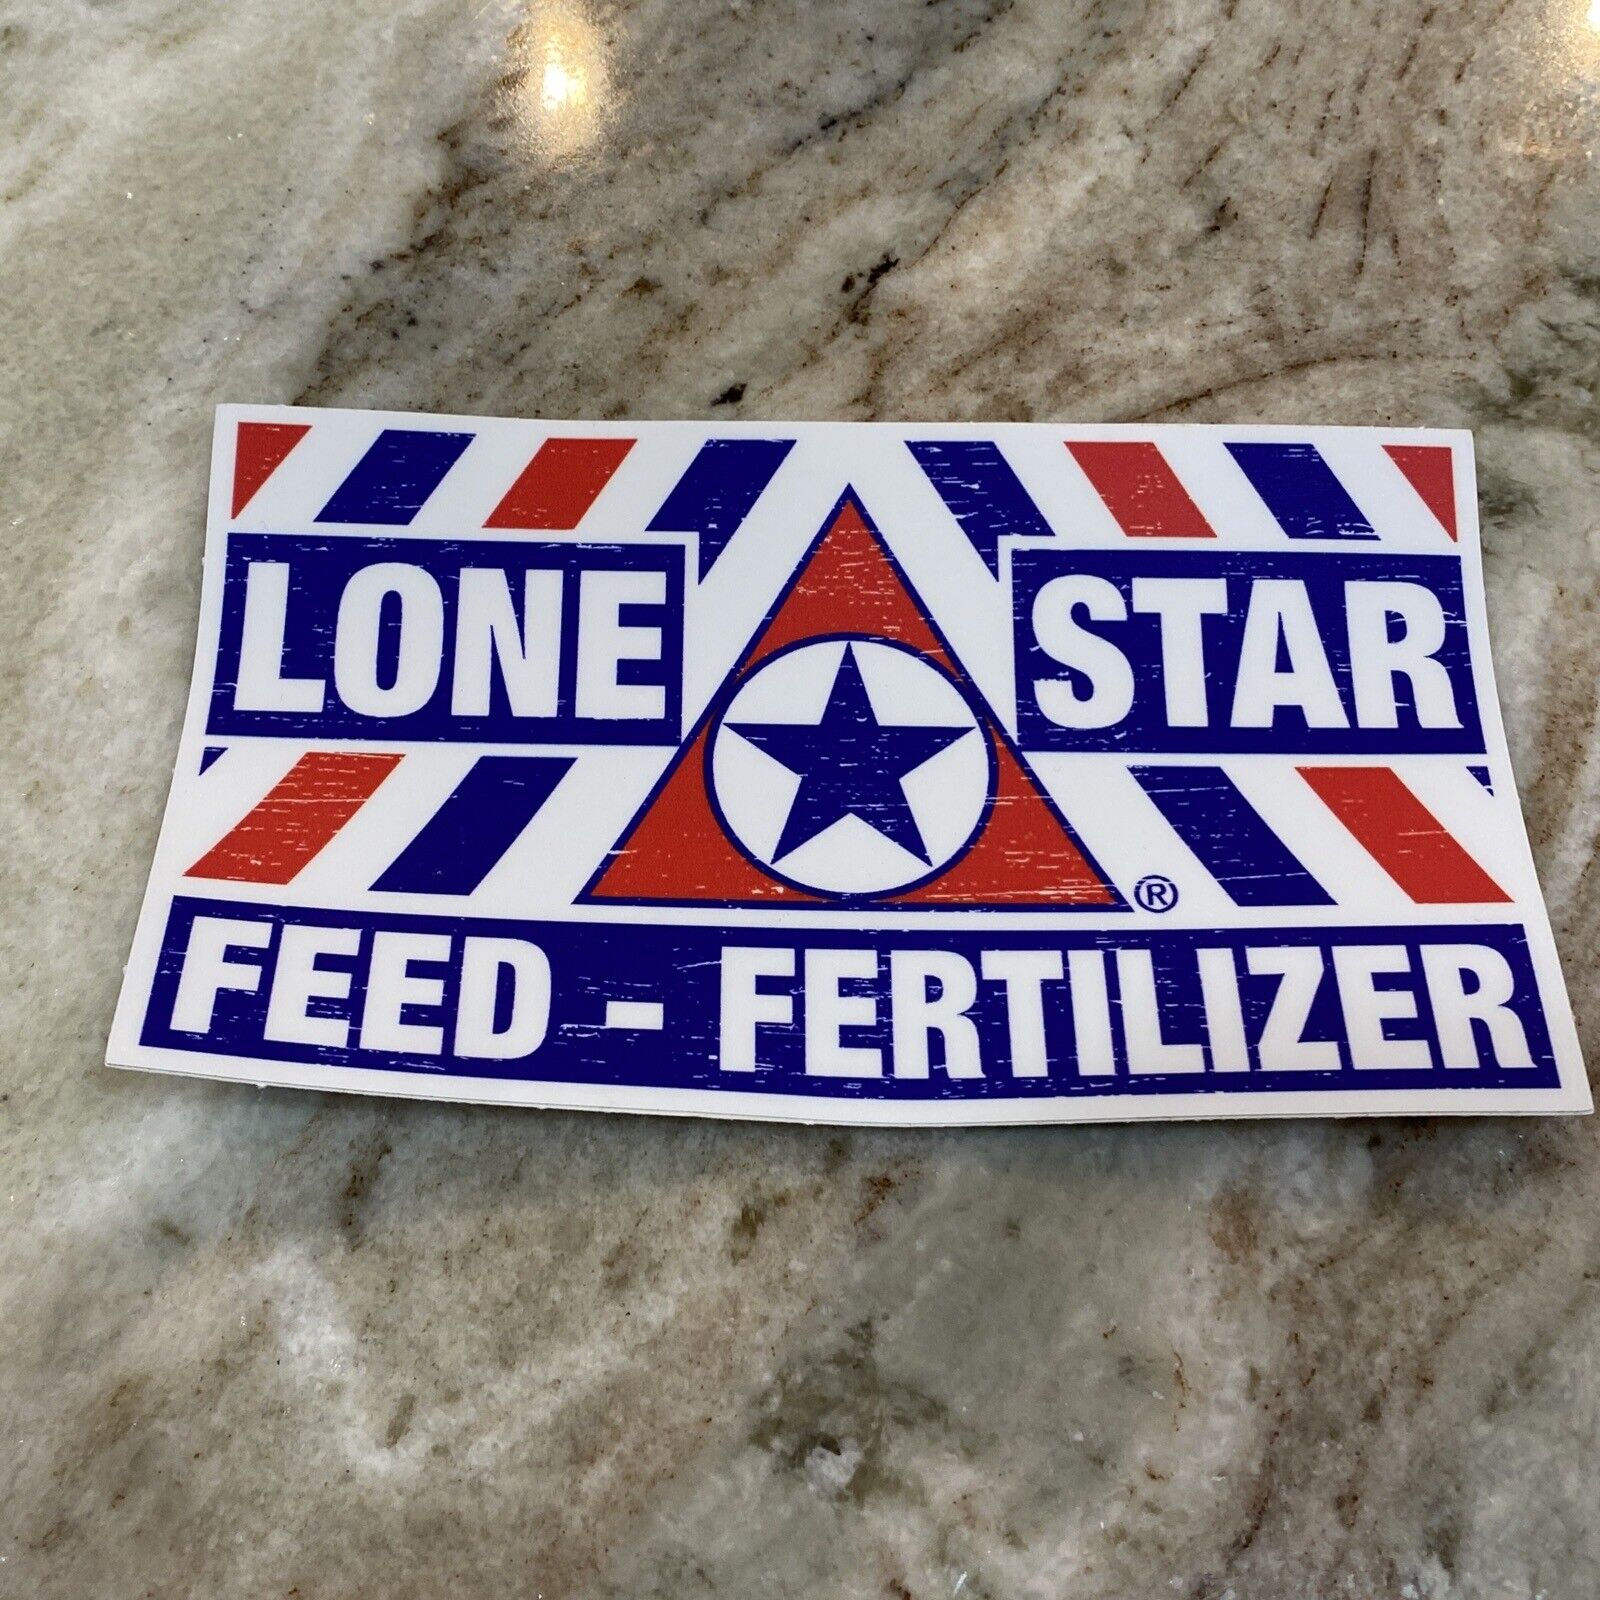 Lone Star Feed Fertilizer Sticker Decal 5” Nacogdoches Texas